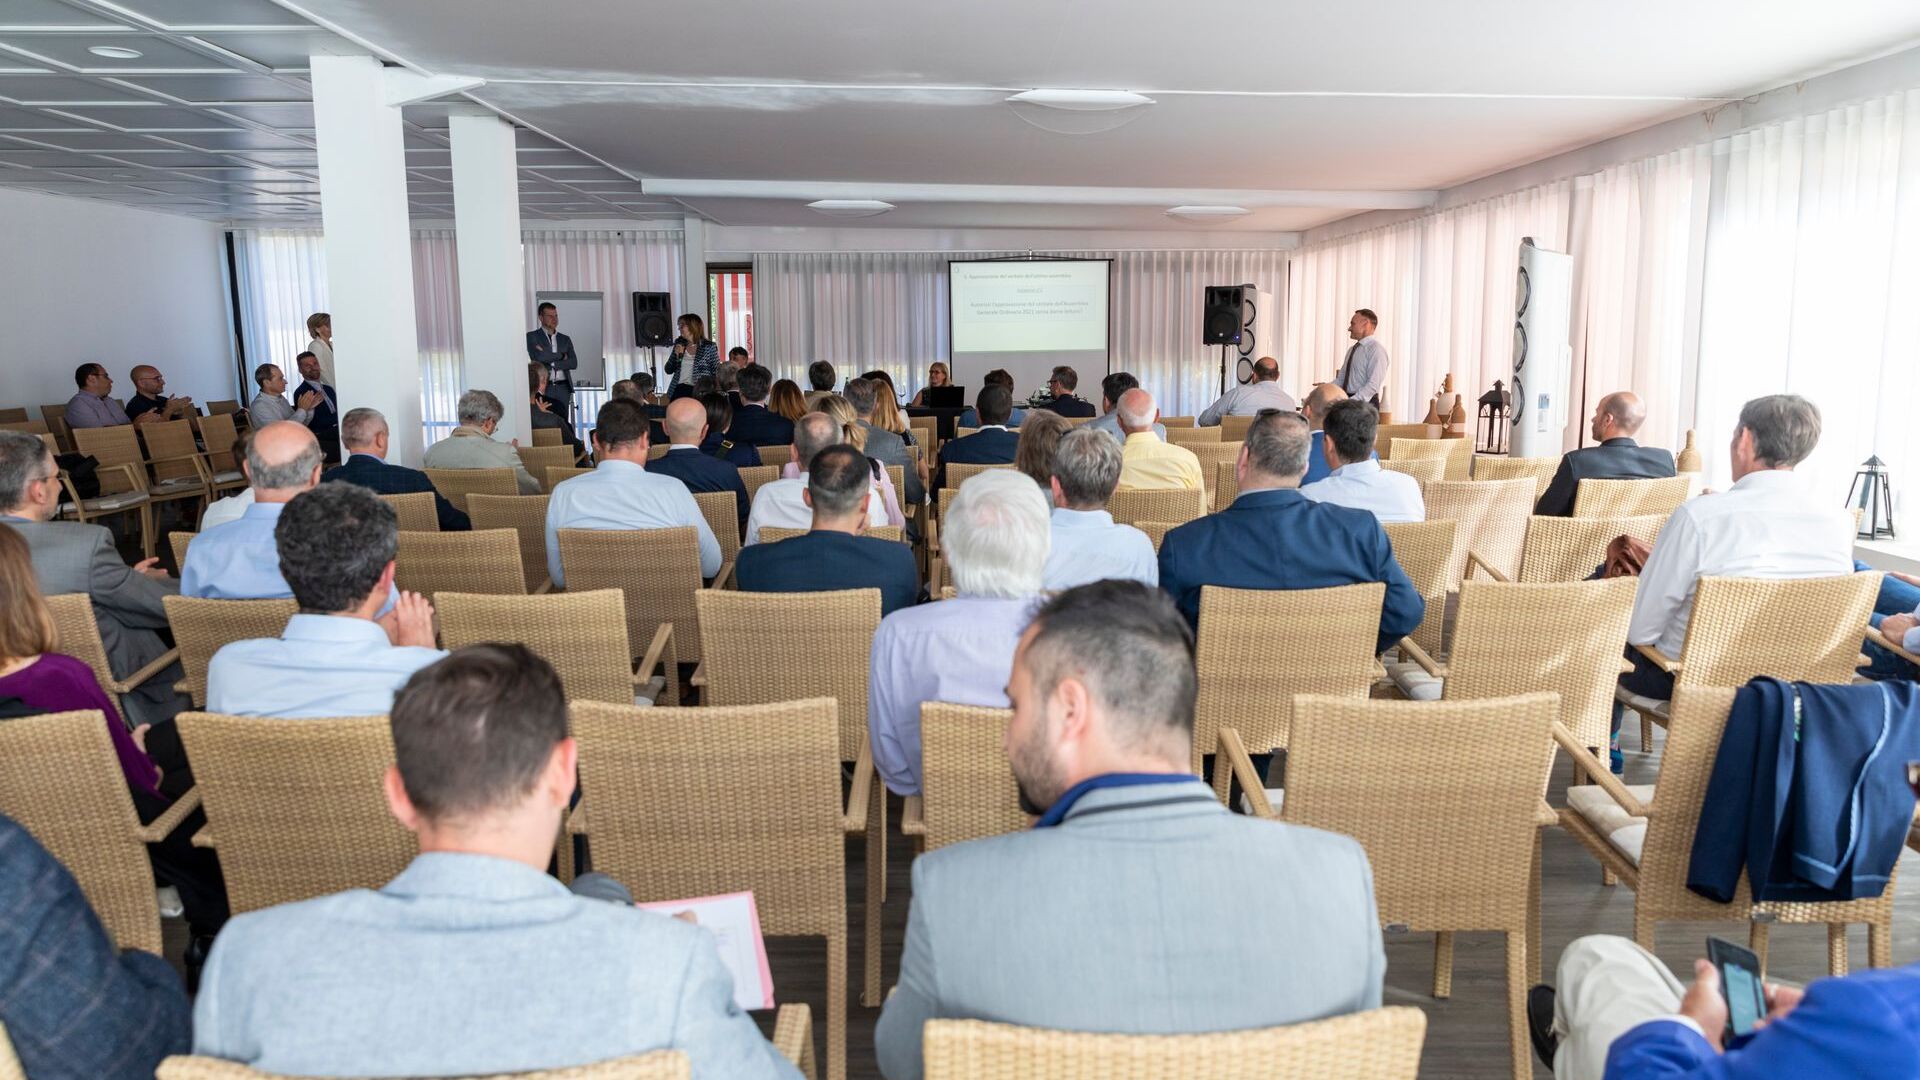 Đại hội đồng thường kỳ của hiệp hội ated-ICT Ticino được tổ chức vào ngày 7 tháng 2022 năm XNUMX tại Cadro